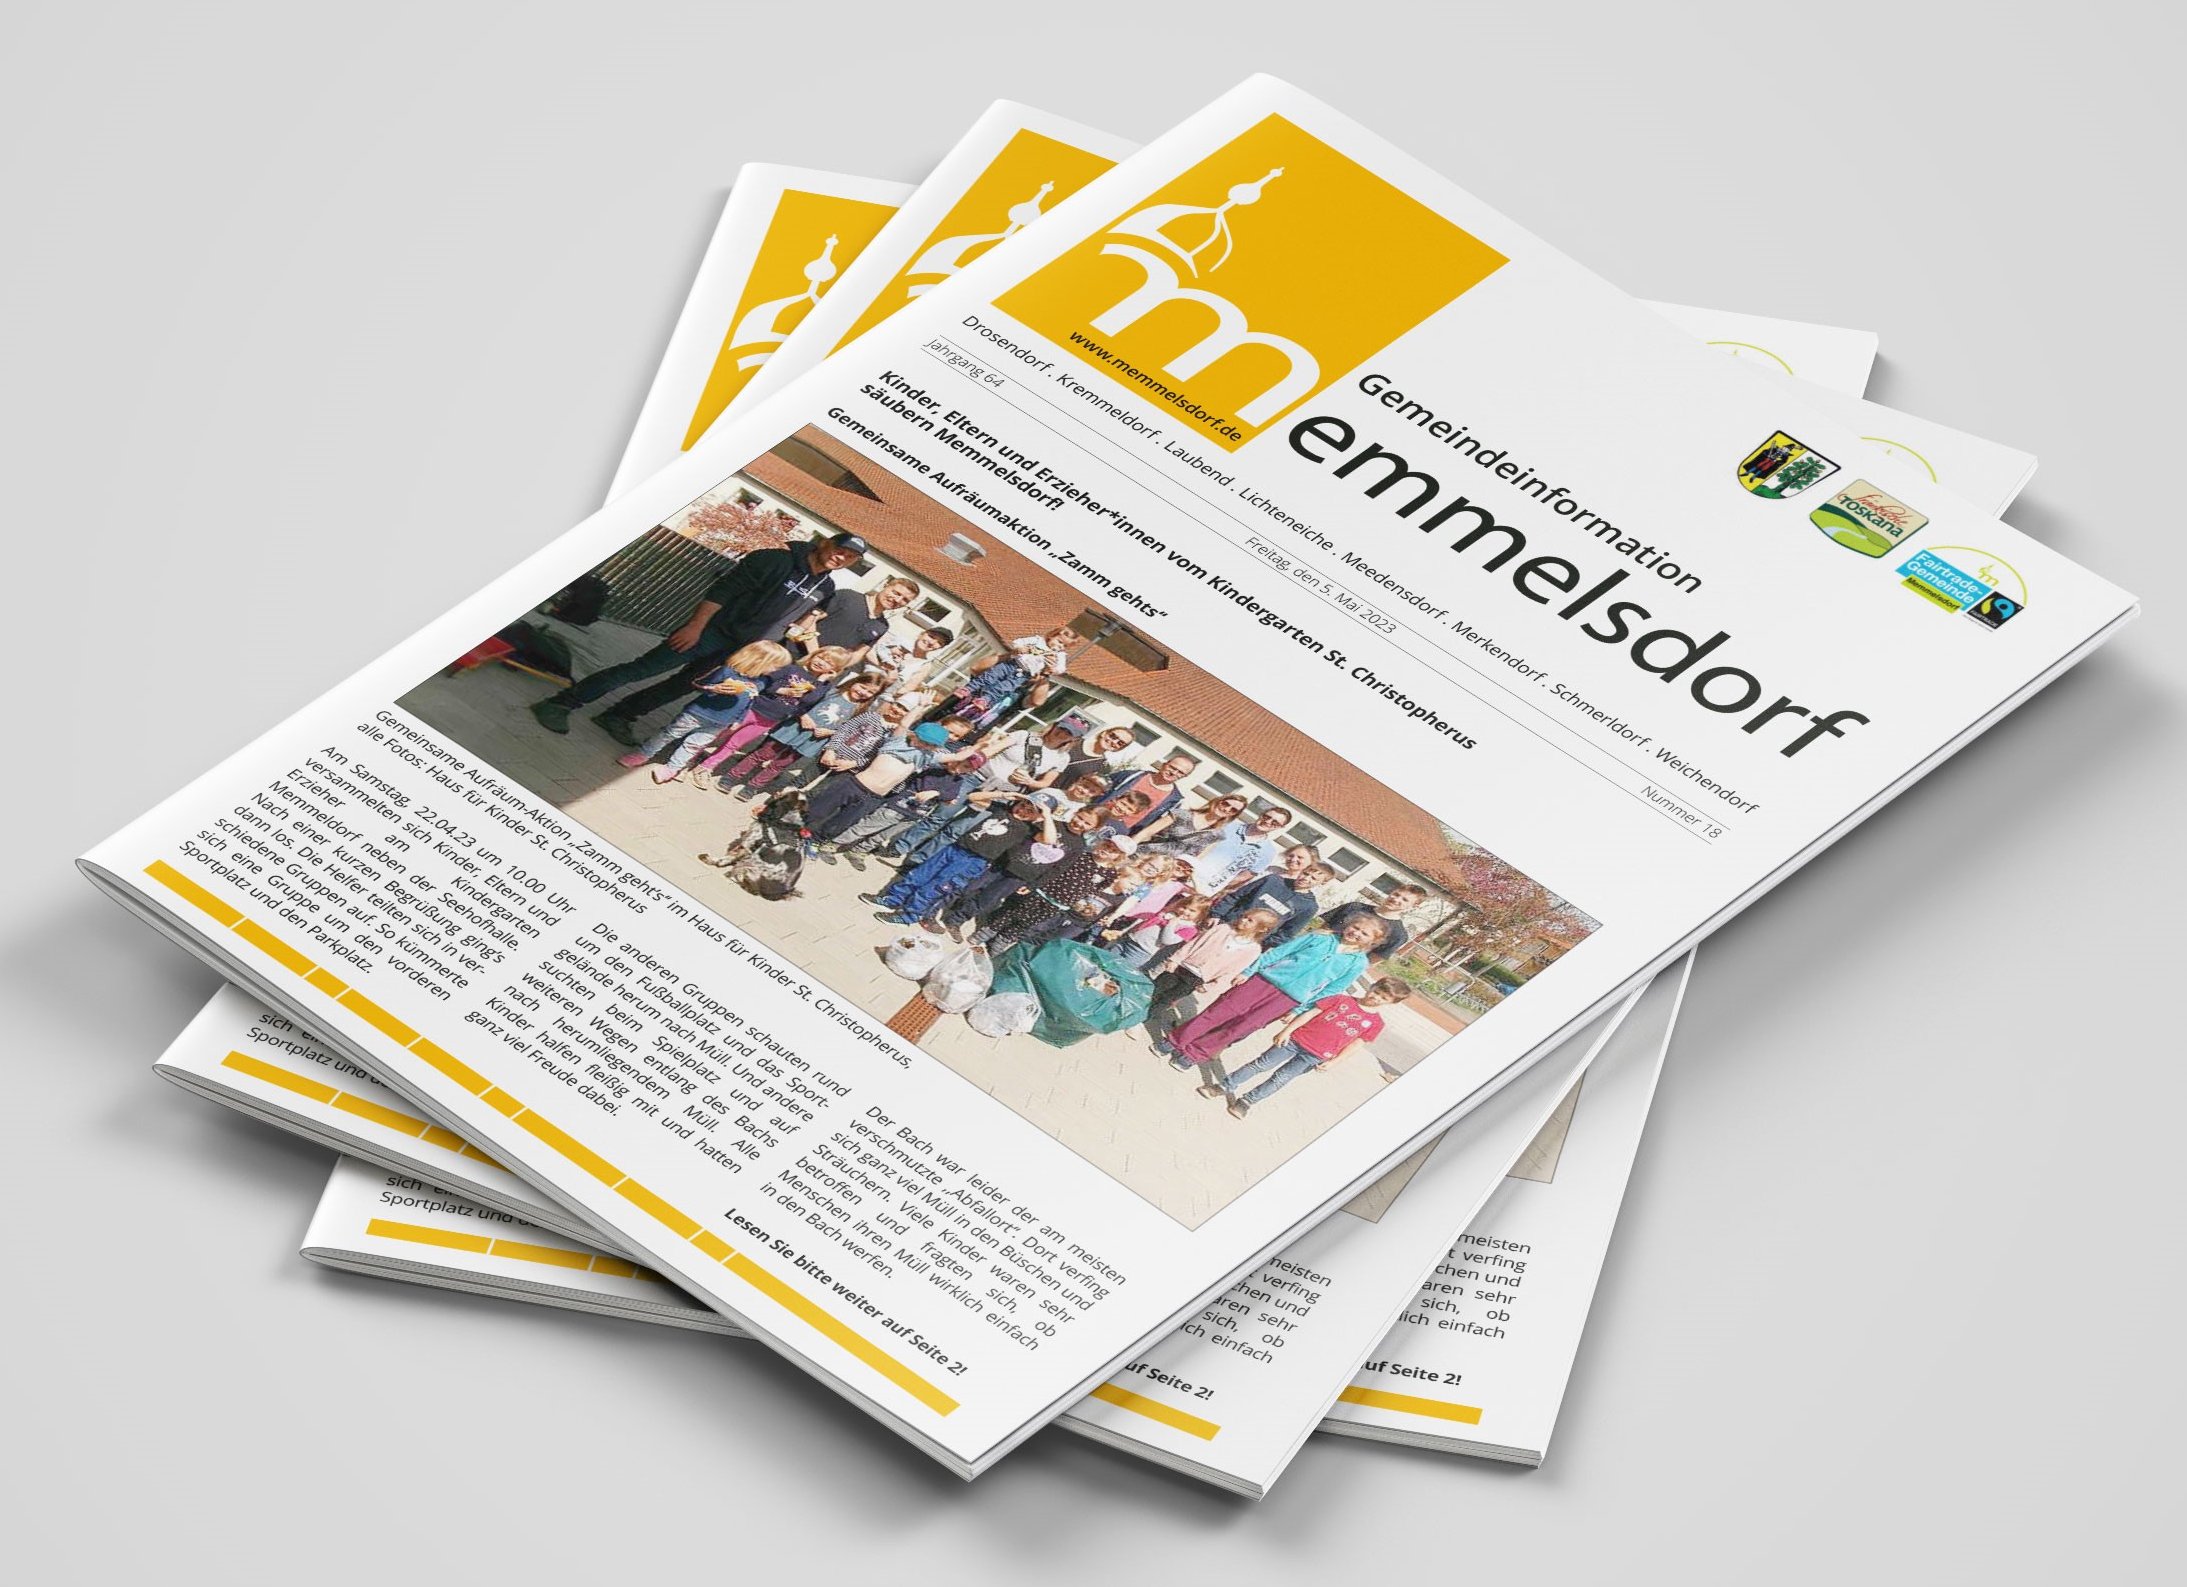 Das Mitteilungsblatt der Gemeinde Memmelsdorf erscheint wöchentlich